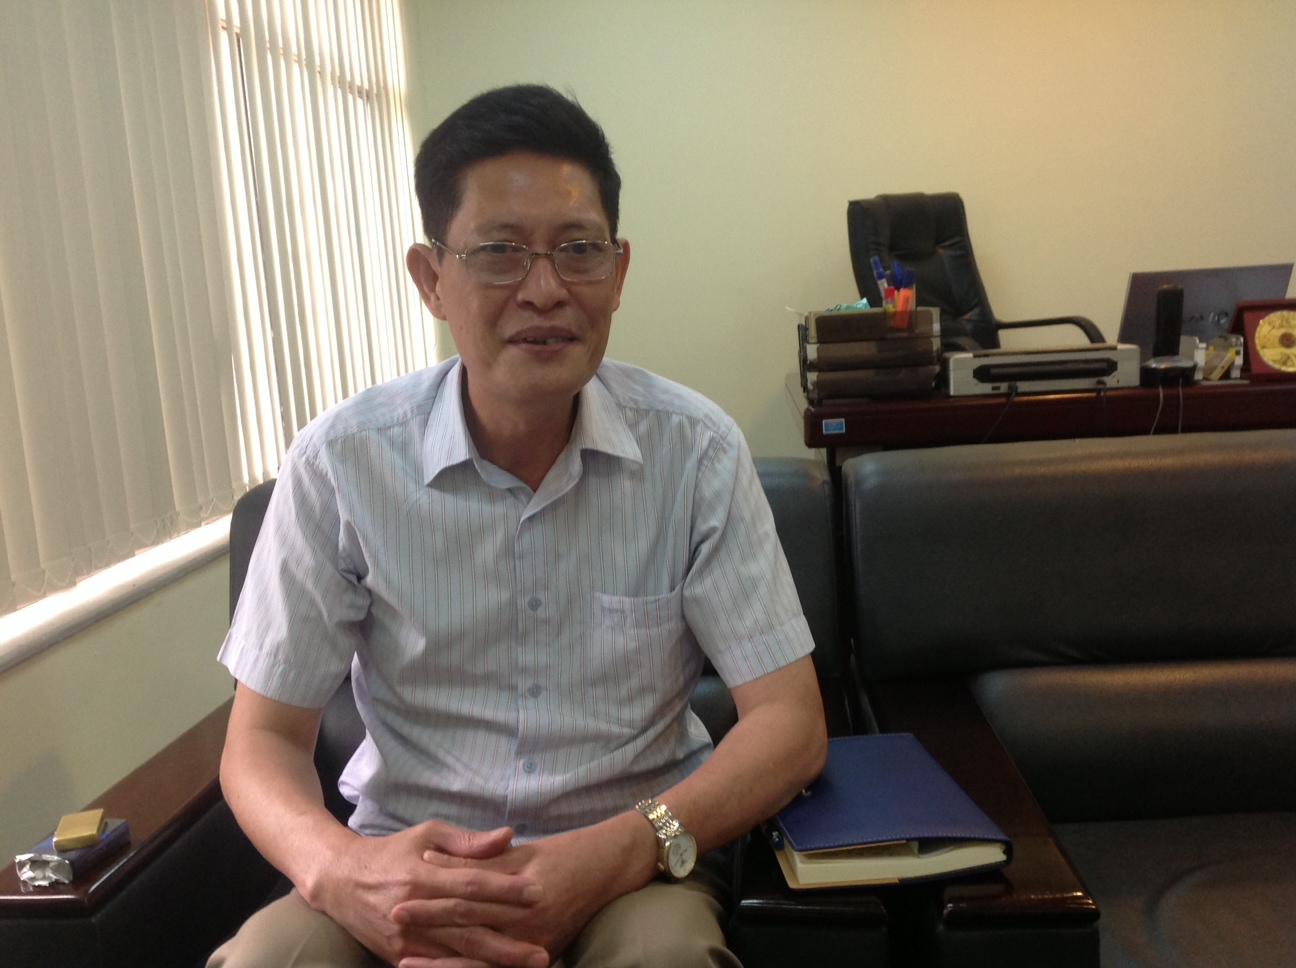 Ông Lưu Xuân Hùng trao đổi cùng PV Dân trí.